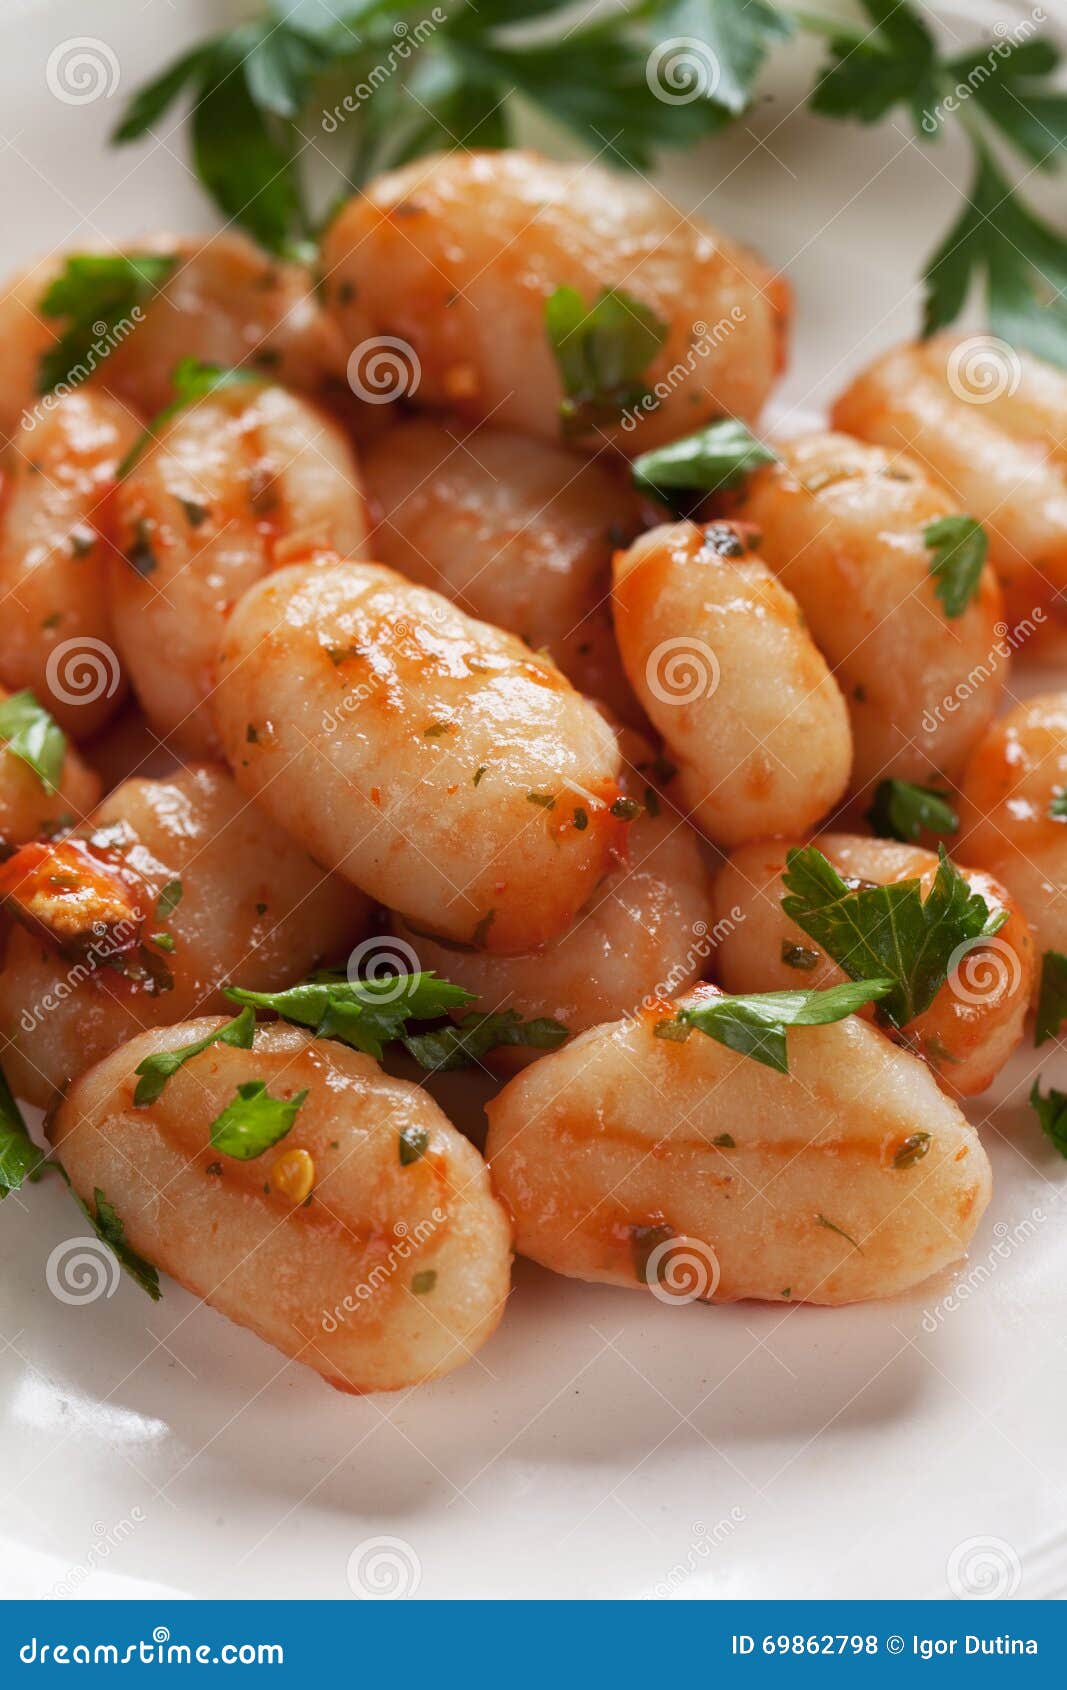 gnocchi di patata, italian potato noodle